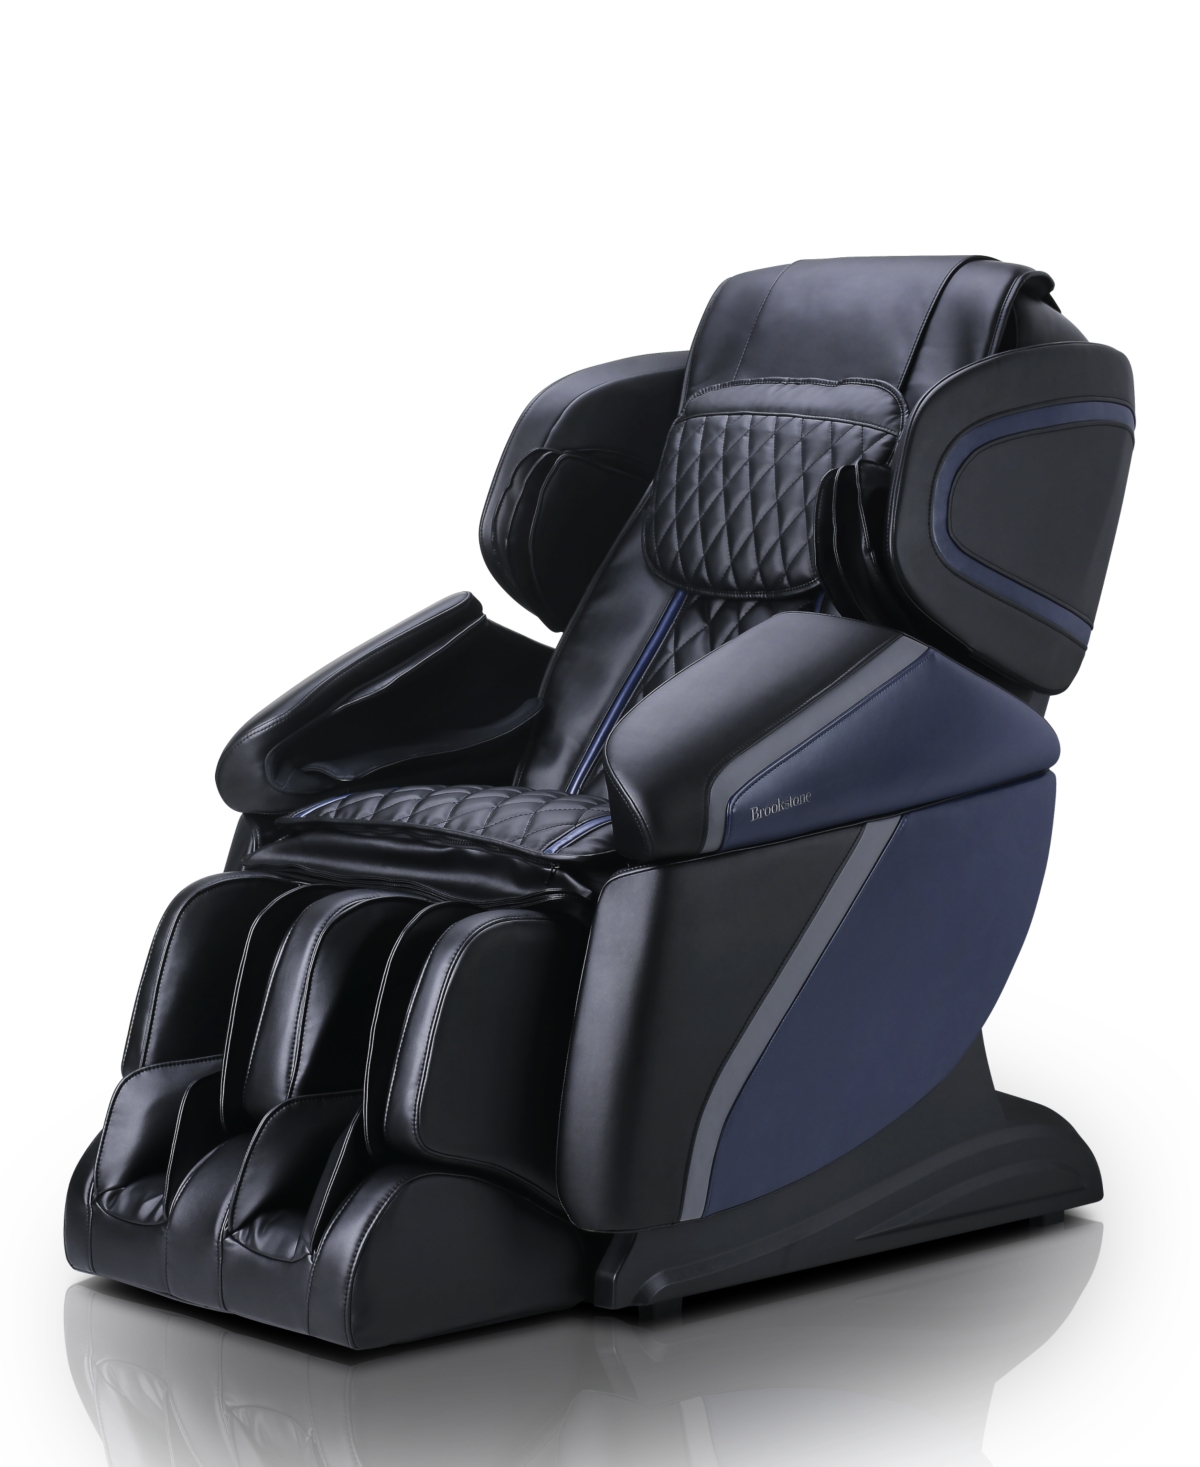 Bk-450 Massage Chair